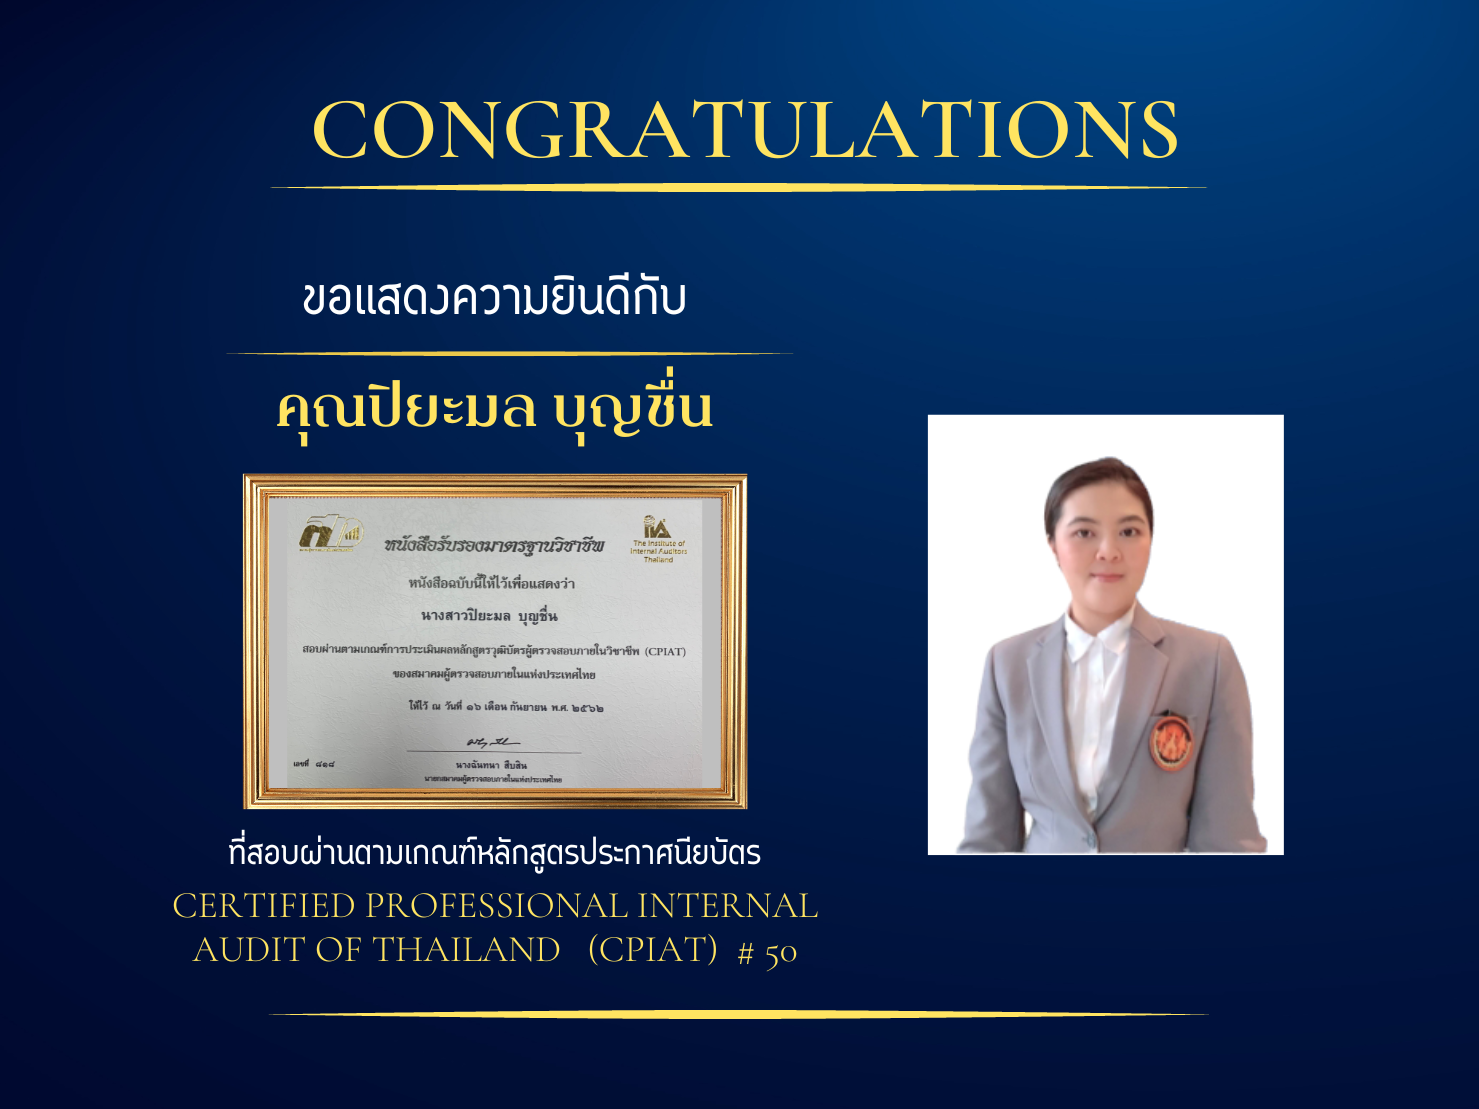 ขอแสดงความยินดีกับคุณ ปิยะมล บุญชื่น ที่สอบผ่านตามเกณฑ์หลักสูตรประกาศนียบัตร  ผู้ตรวจสอบภายในของประเทศไทย Certified Professional Internal Audit of Thailand (CPIAT) # 5